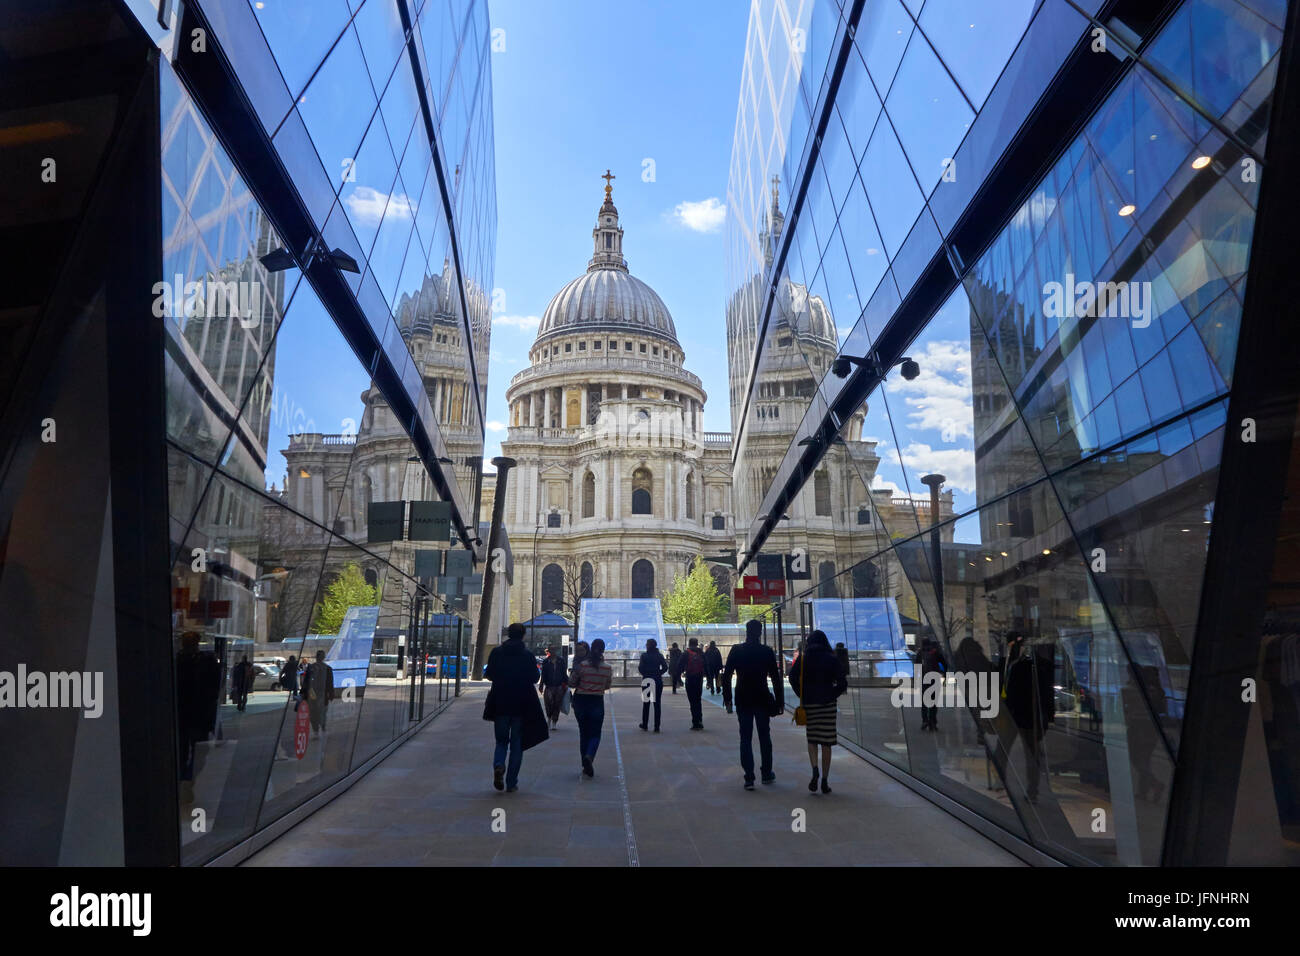 La Catedral de San Pablo, reflejada en un cambio nuevo centro comercial en la ciudad de Londres, Inglaterra, Reino Unido, España, Gran Bretaña, GB Foto de stock